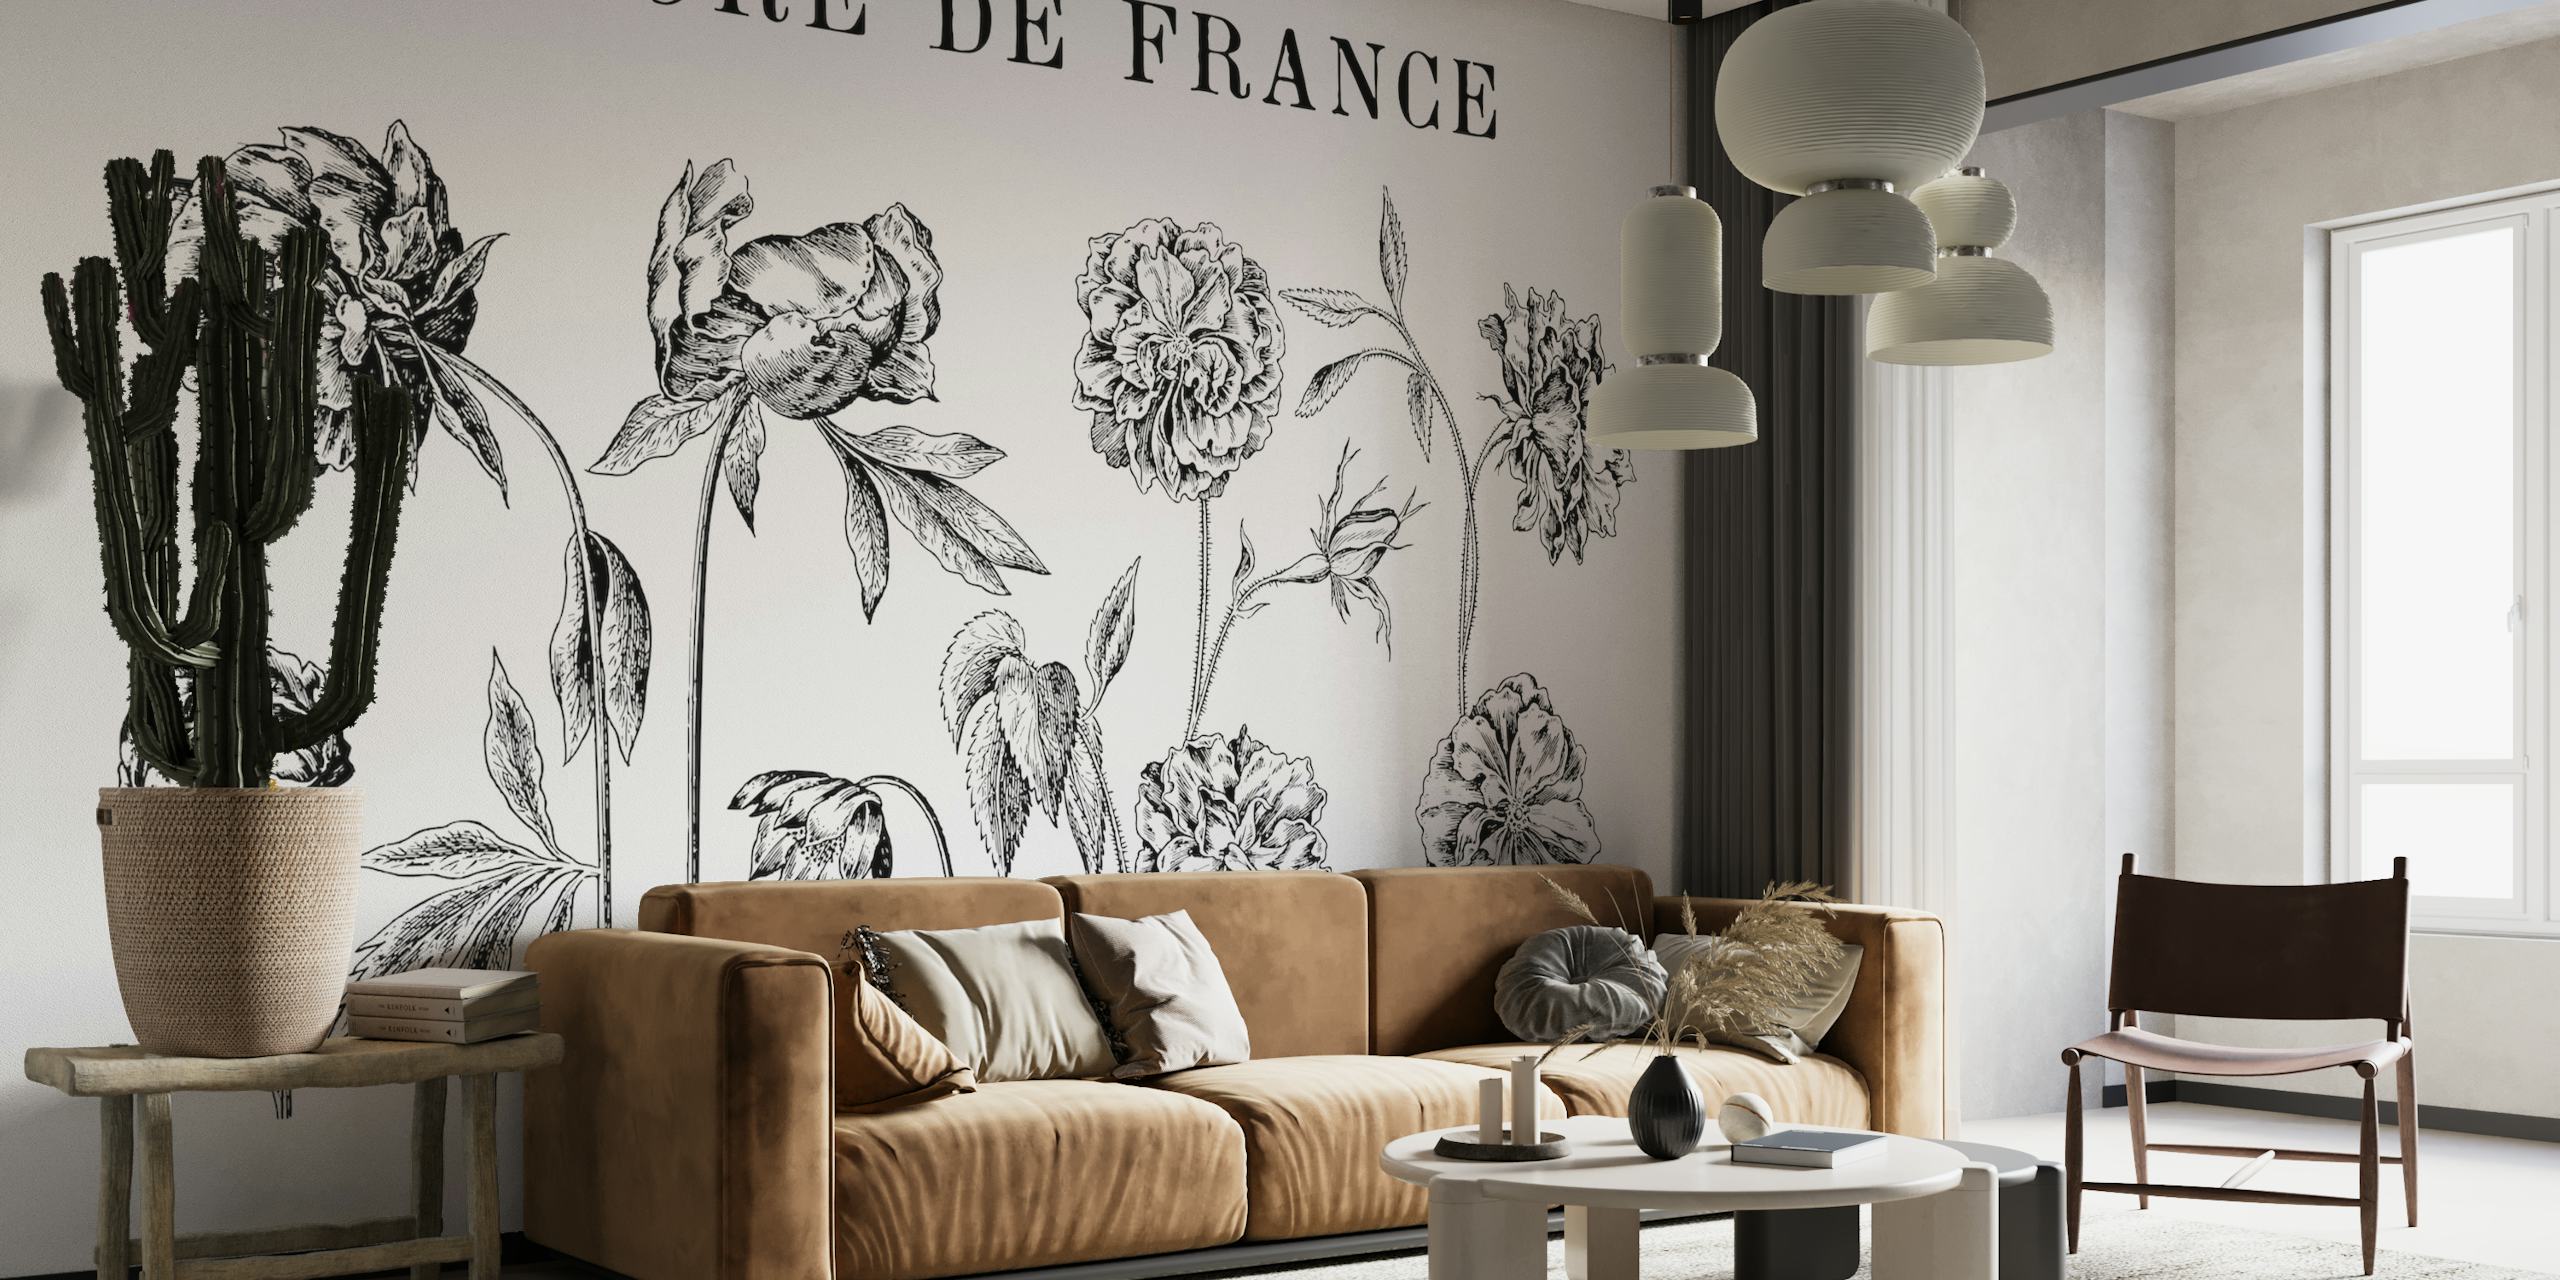 Crno-bijeli botanički crteži zidni mural koji prikazuje detaljnu povijesnu cvjetnu umjetnost pod nazivom "FLORE DE FRANCE"